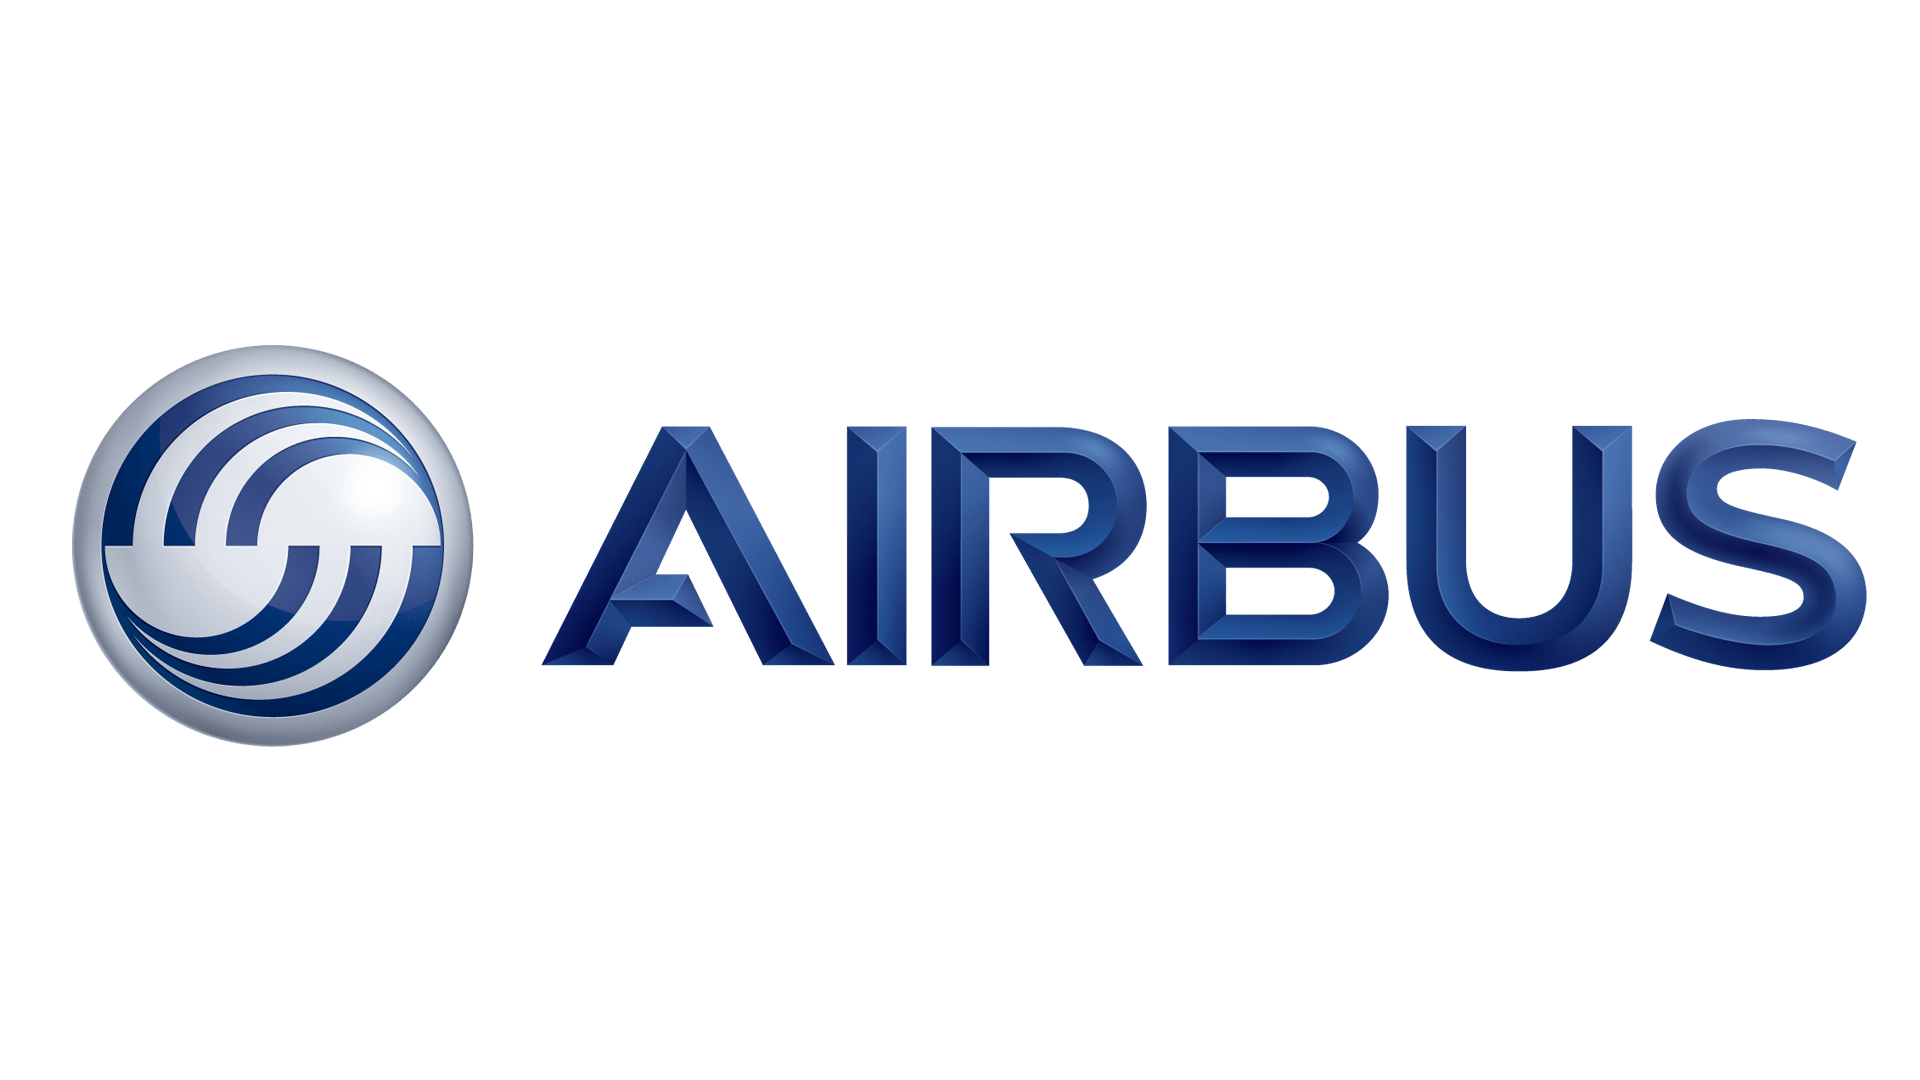 Storia e significato del logo Airbus, evoluzione, simbolo Airbus